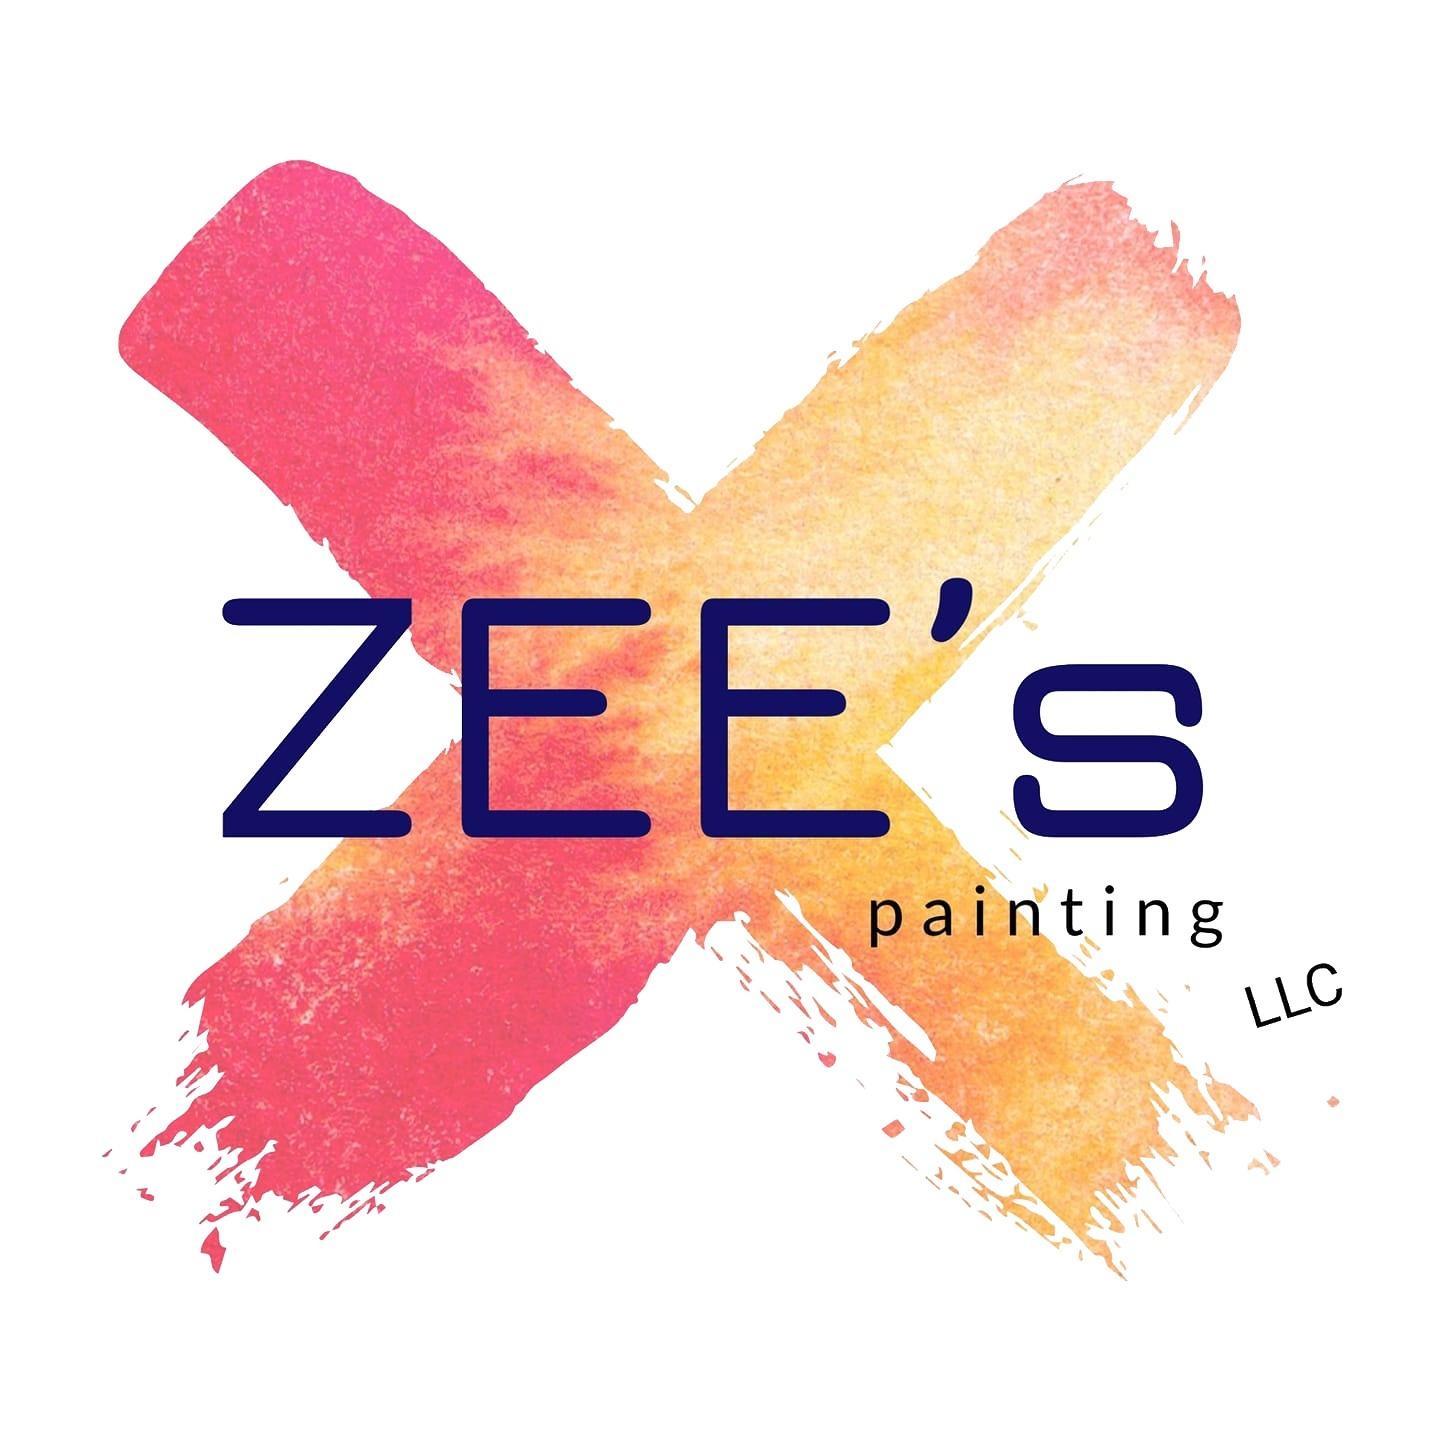 Zee's Painting LLC